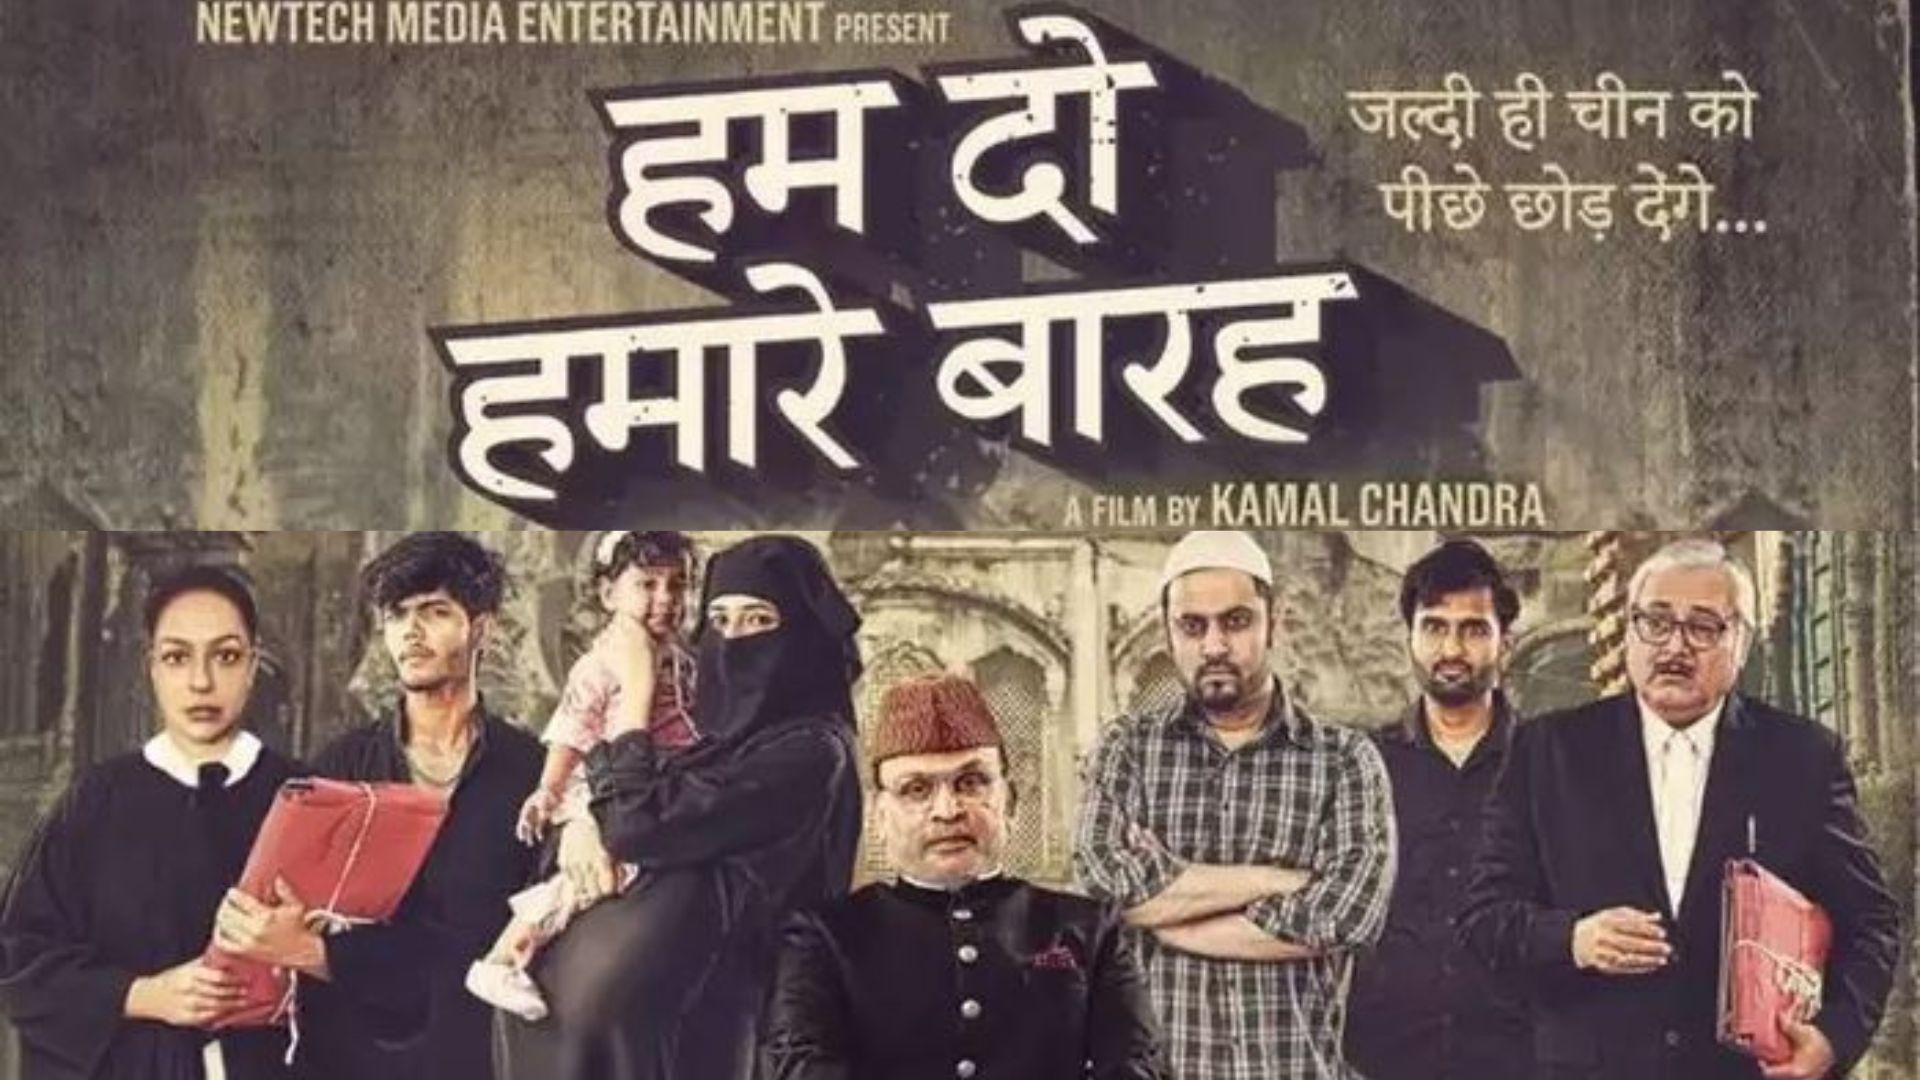 Hum Do Hamare Baraah: जनसंख्या विस्फोट को लेकर मुस्लिम समुदाय पर वार? फिल्म के पोस्टर पर मचा बवाल